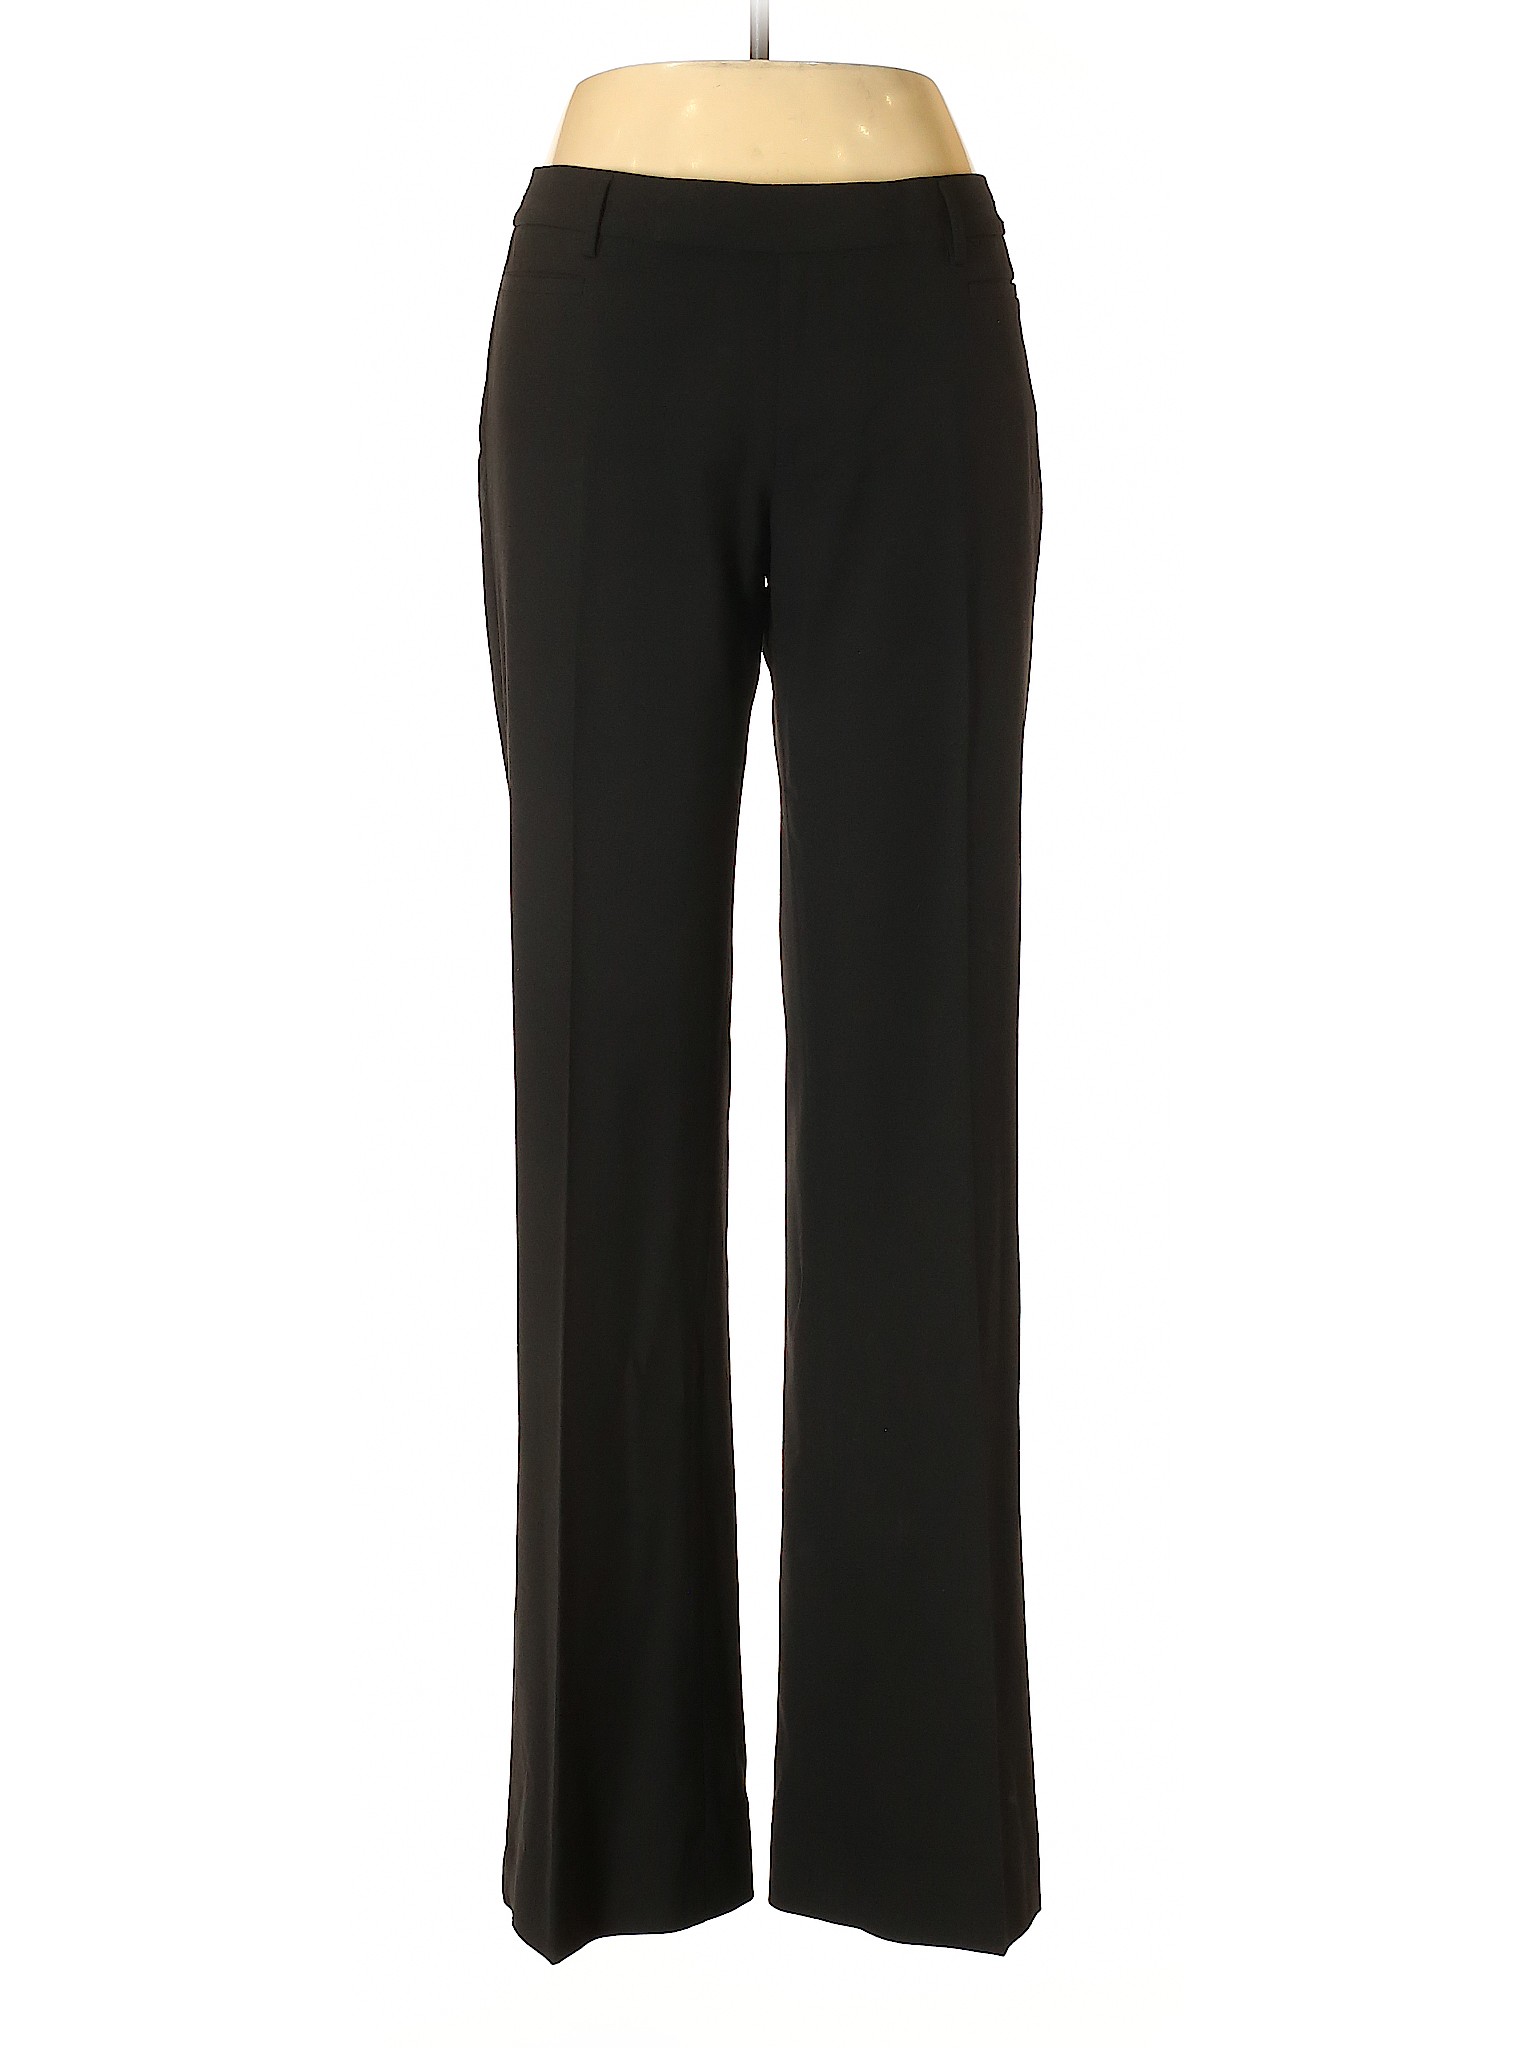 Gap Women Black Dress Pants 10 | eBay